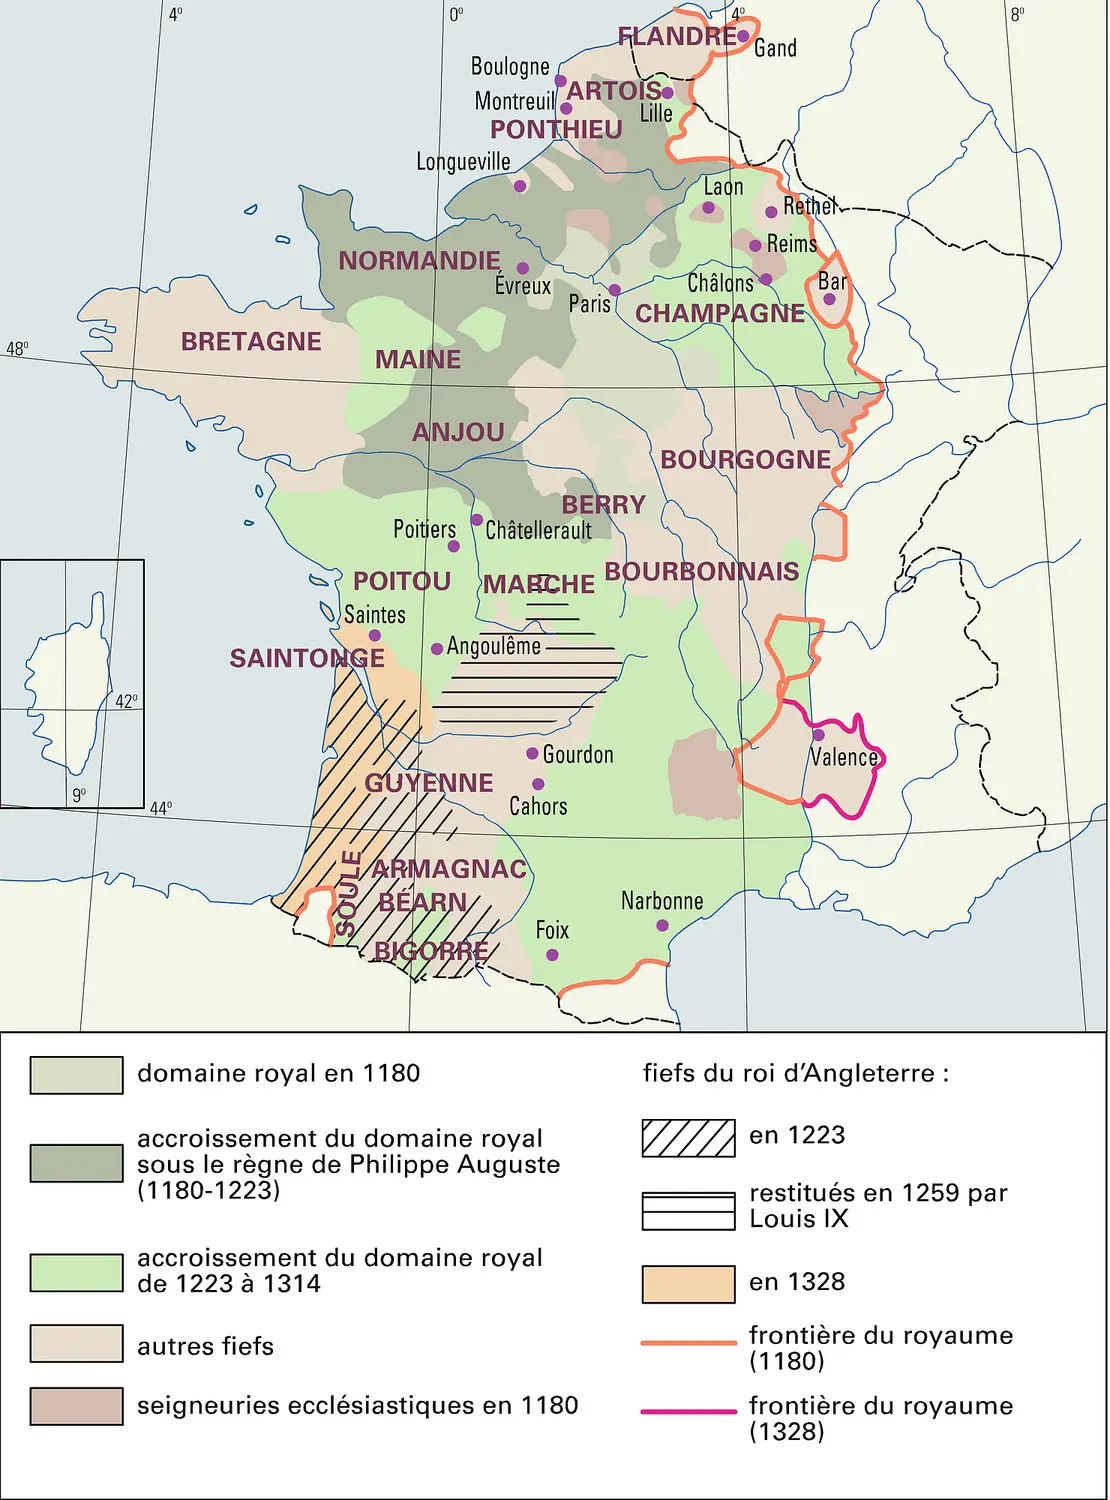 France : formation territoriale, de 1180 à 1328